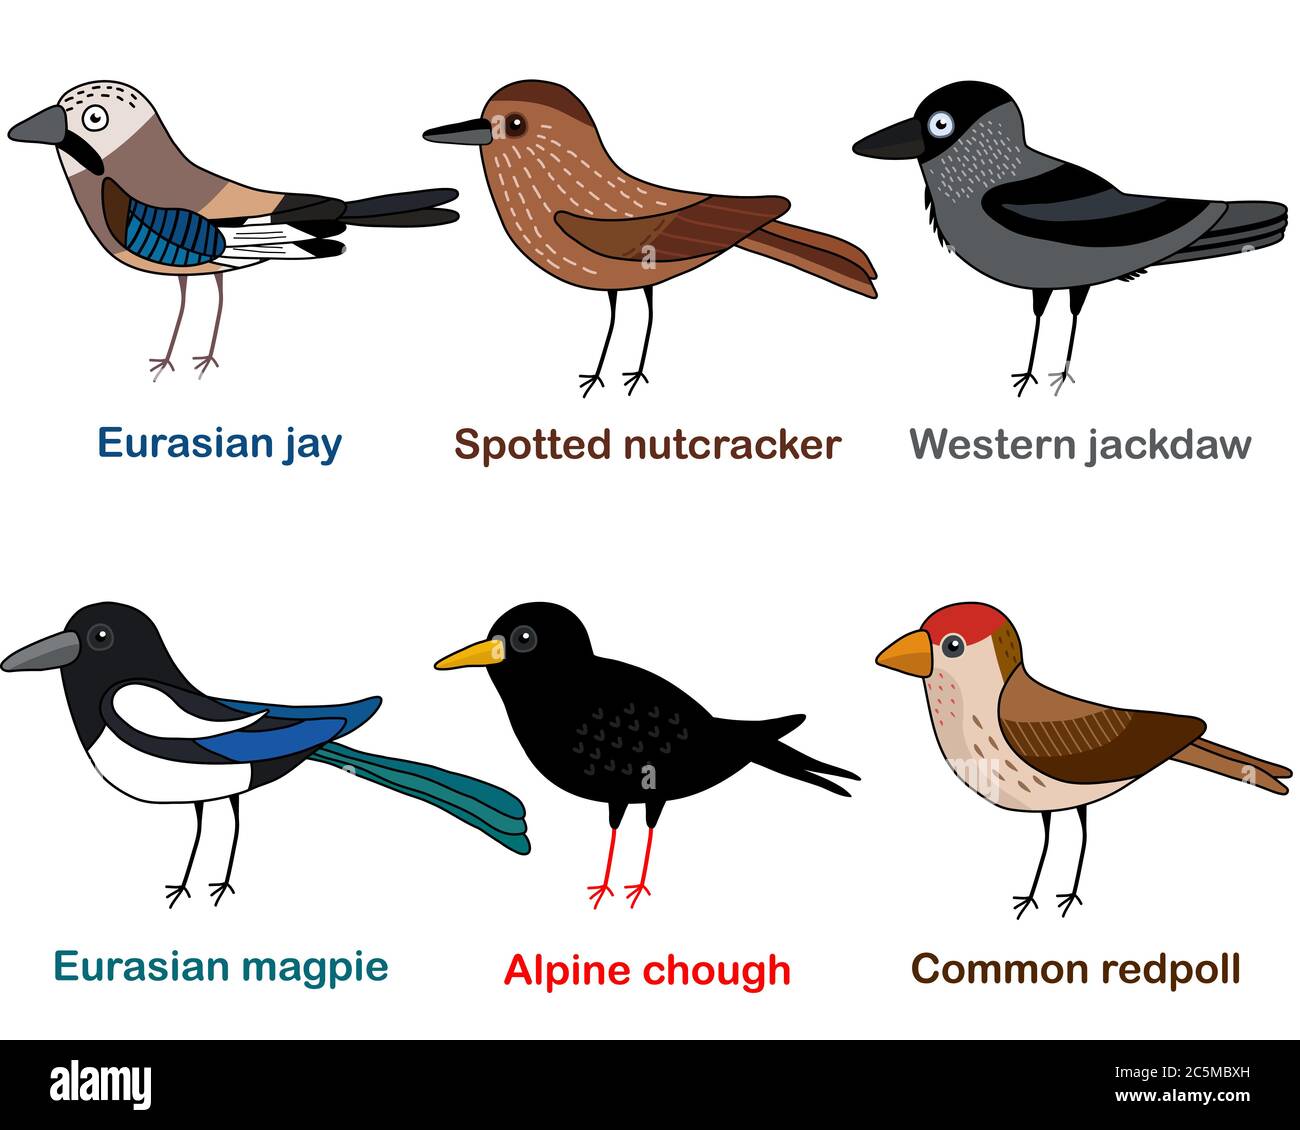 Cute bird vector illustration set, Jay, Nutcracker, Jackdaw, Magpie, Chough, Redpoll, Colorful European bird cartoon collection Stock Vector